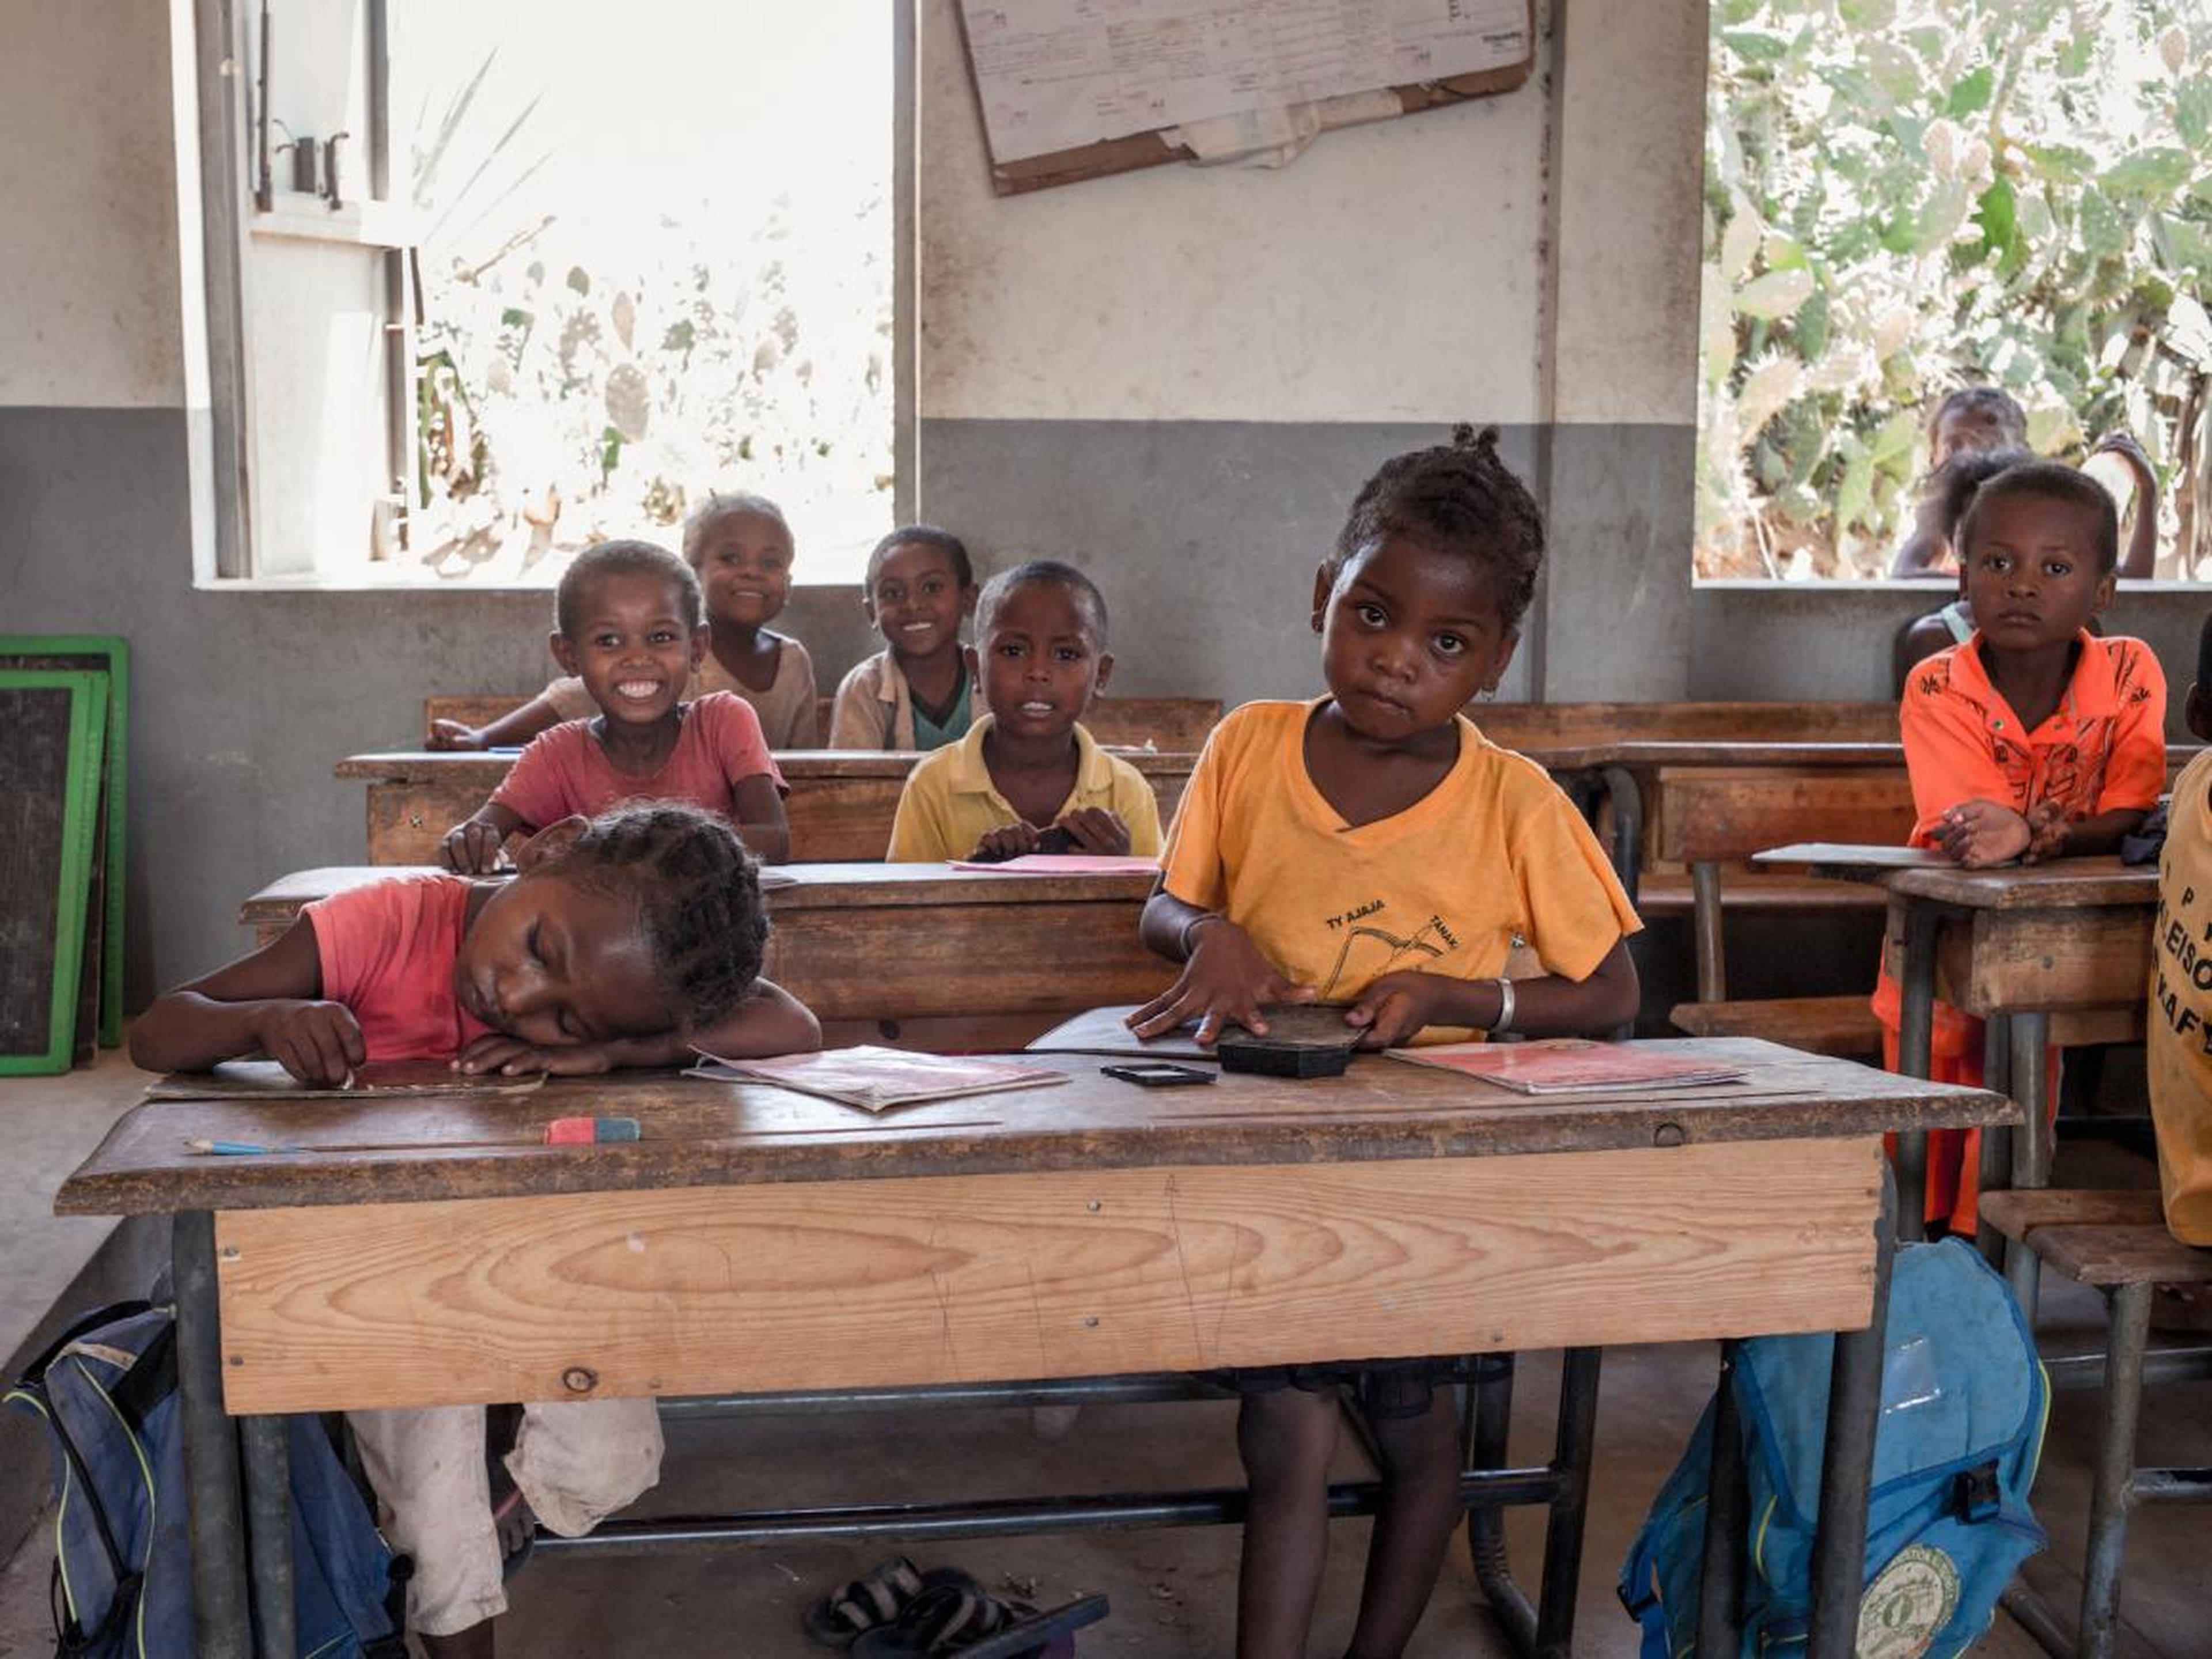 Escolares en Madagascar asisten a una clase después del almuerzo, ofrecido por el Programa de Prevención de la Desnutrición del Programa Mundial de Alimentos, en diciembre.